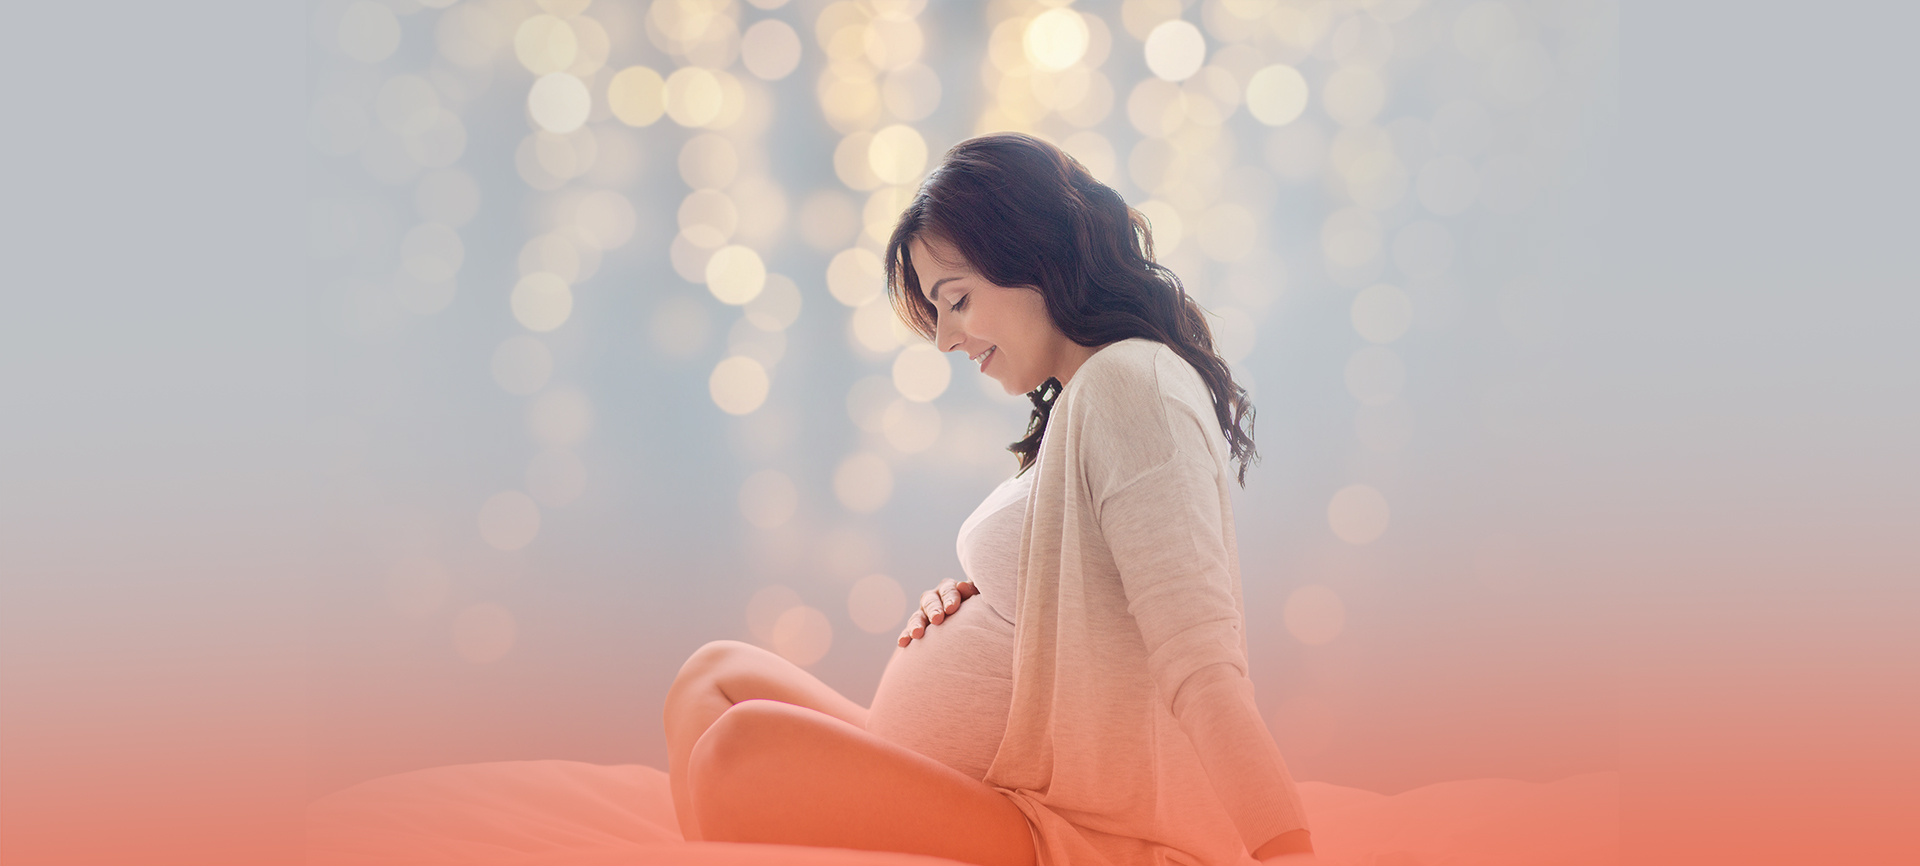 Progesterona e fertilidade: qual a relação